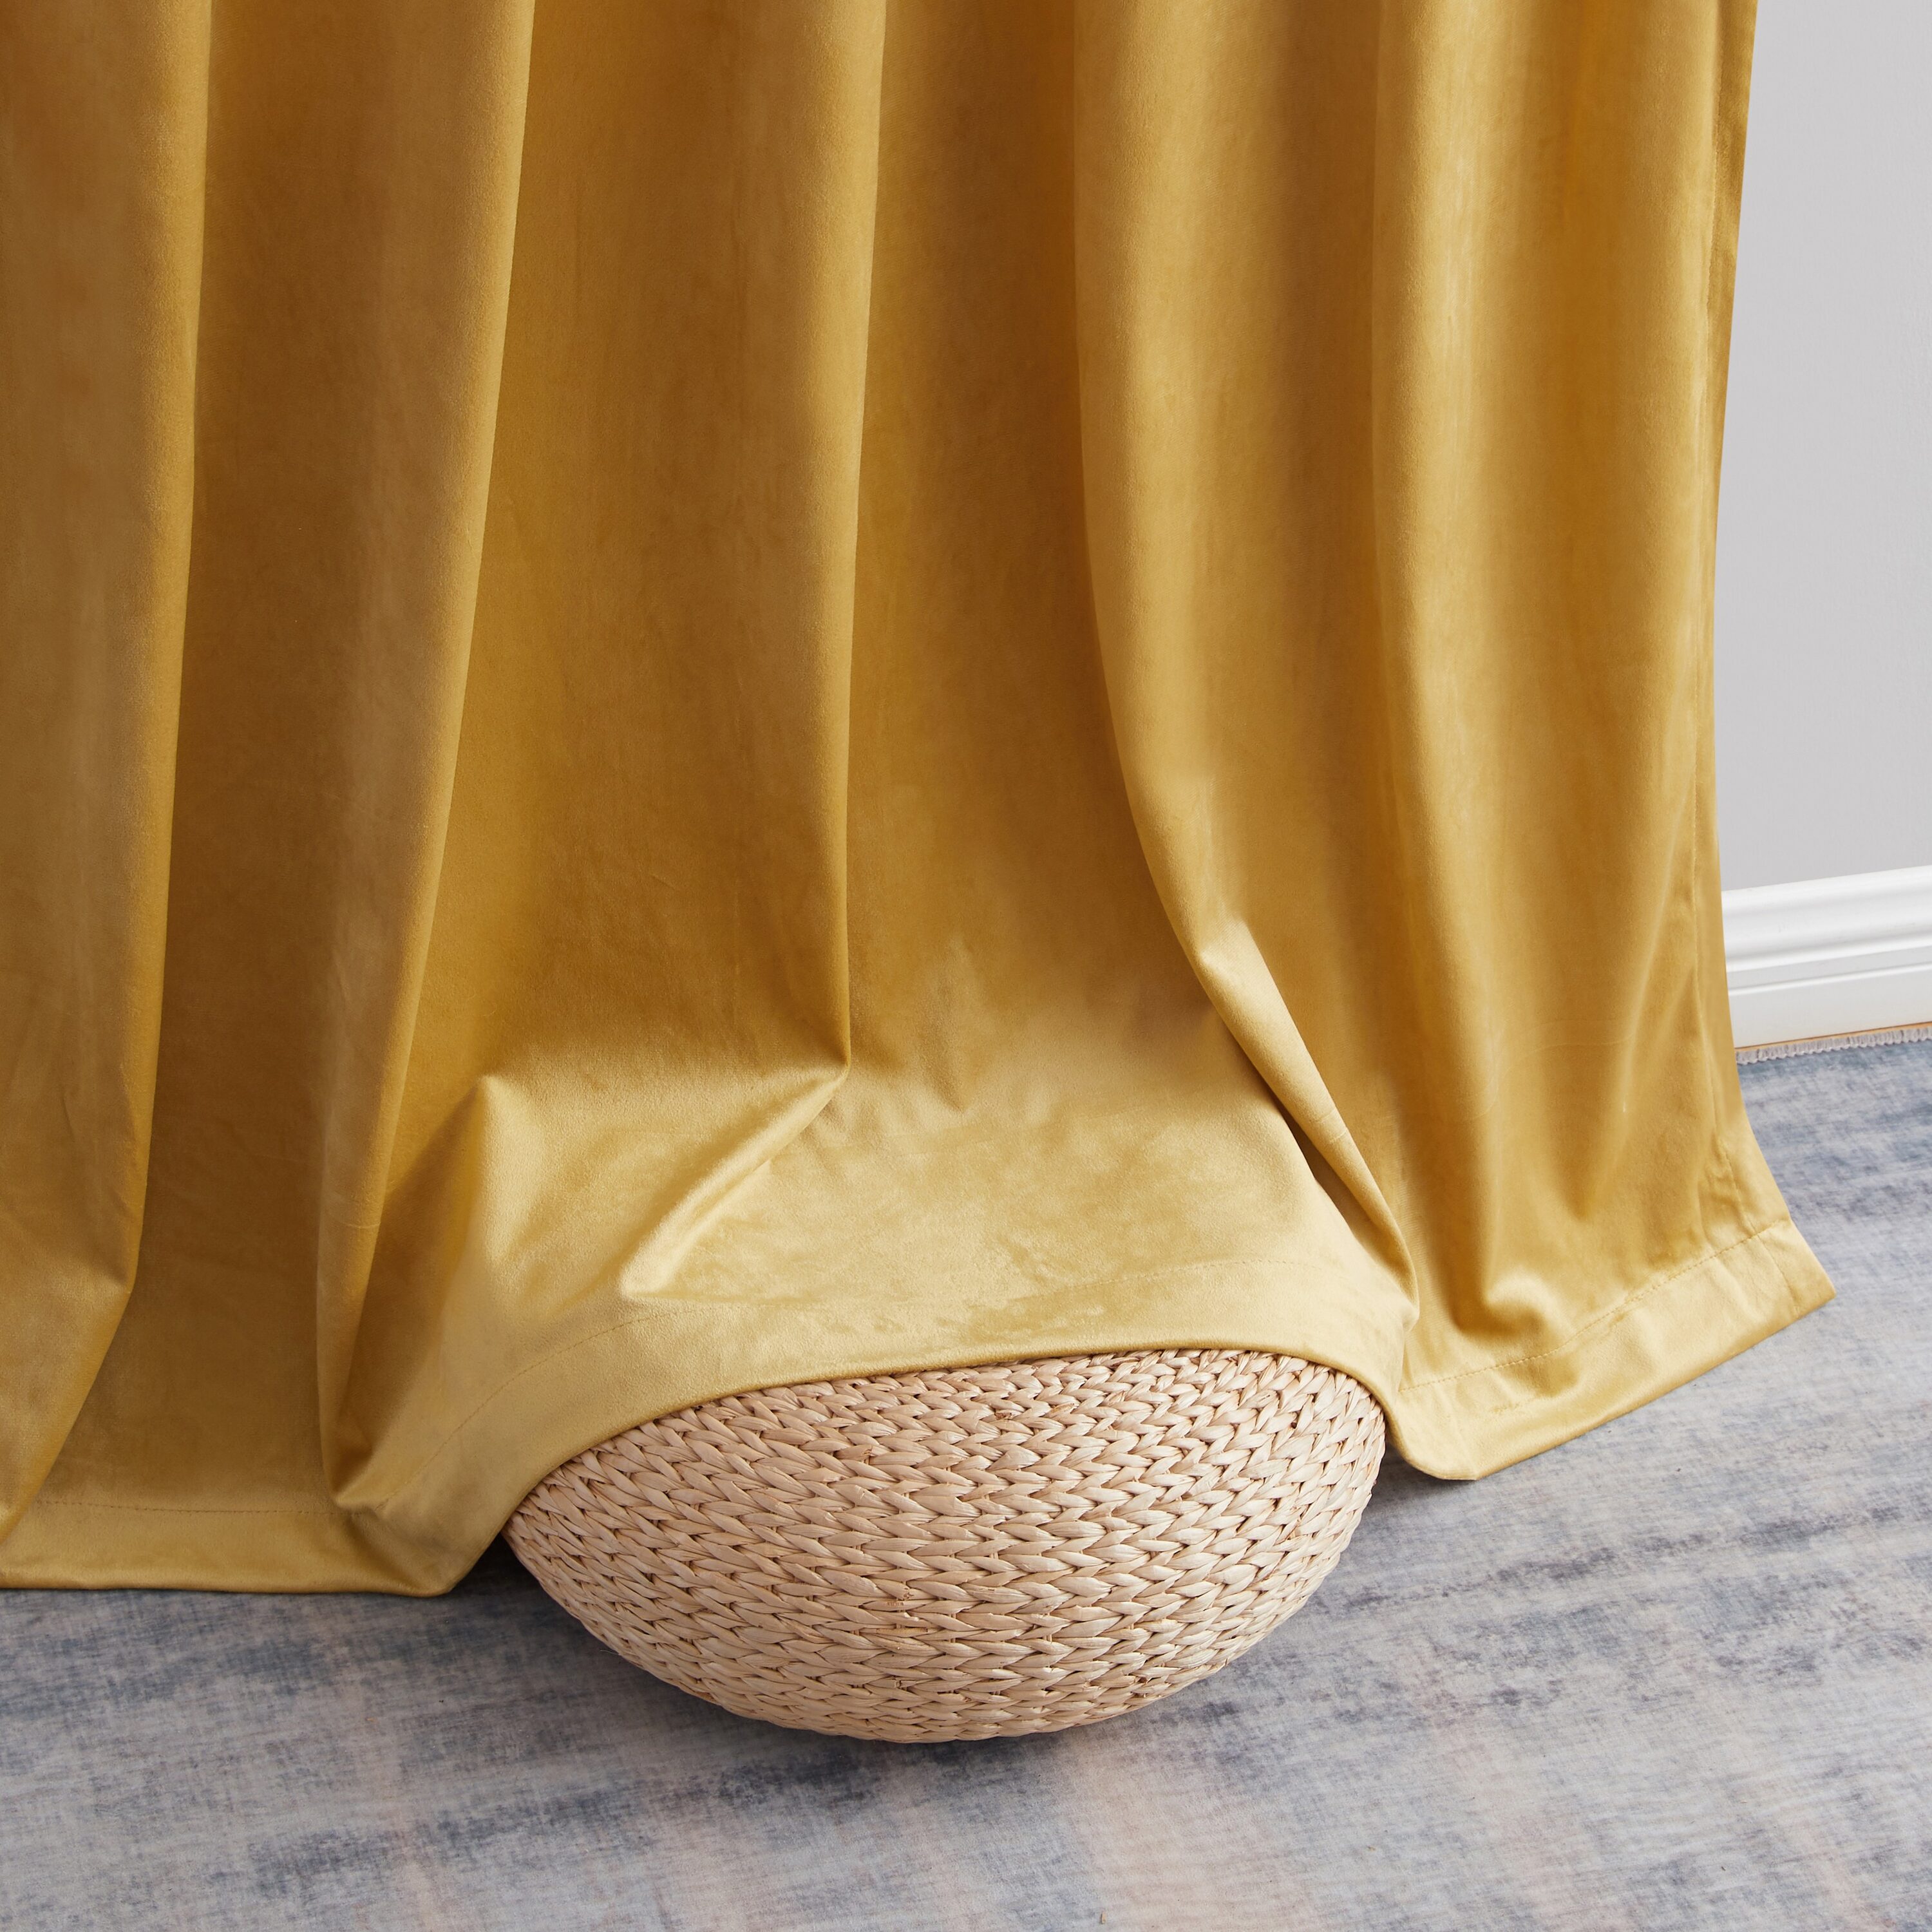 Buy Venezia Plain Velour/Velvet Lined 3 Curtains (Pair) - Gold